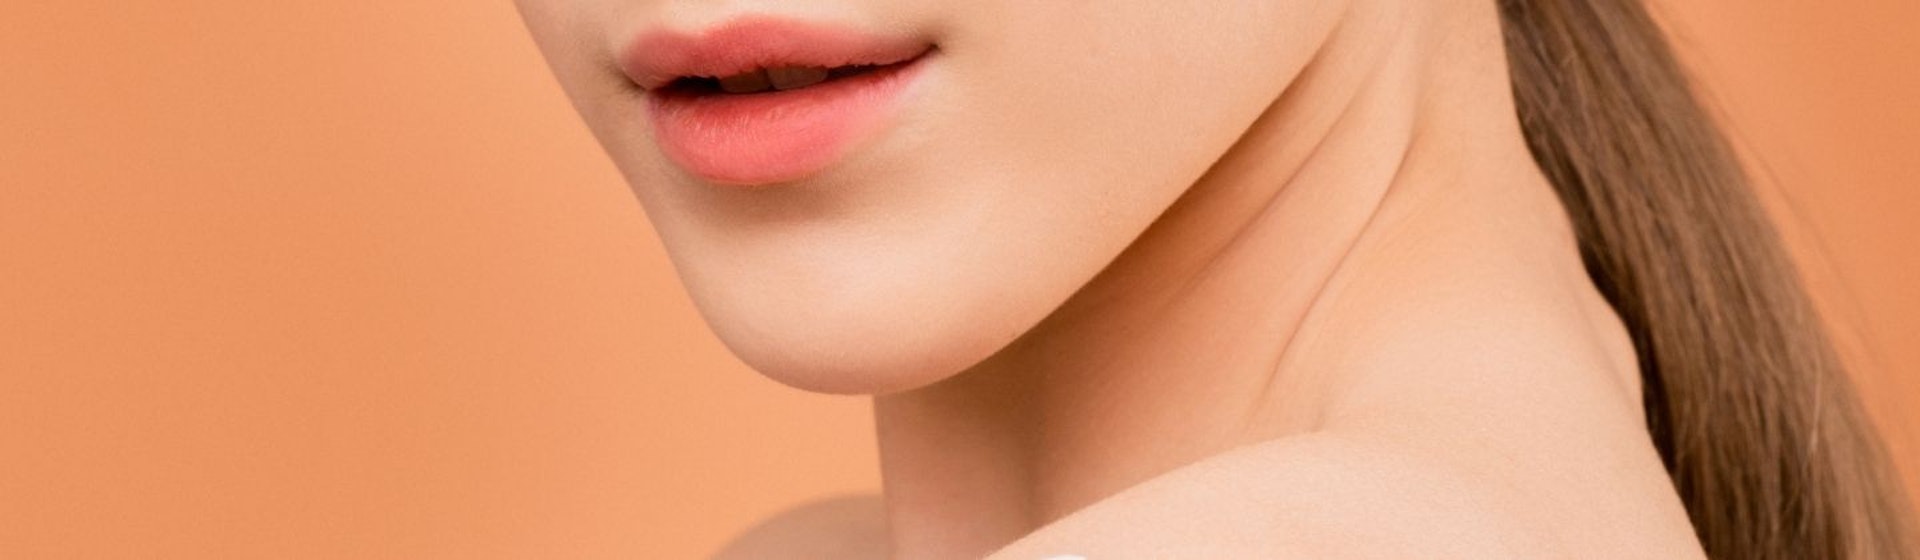 Tips para el cuidado de la piel que recomiendan los dermatólogos